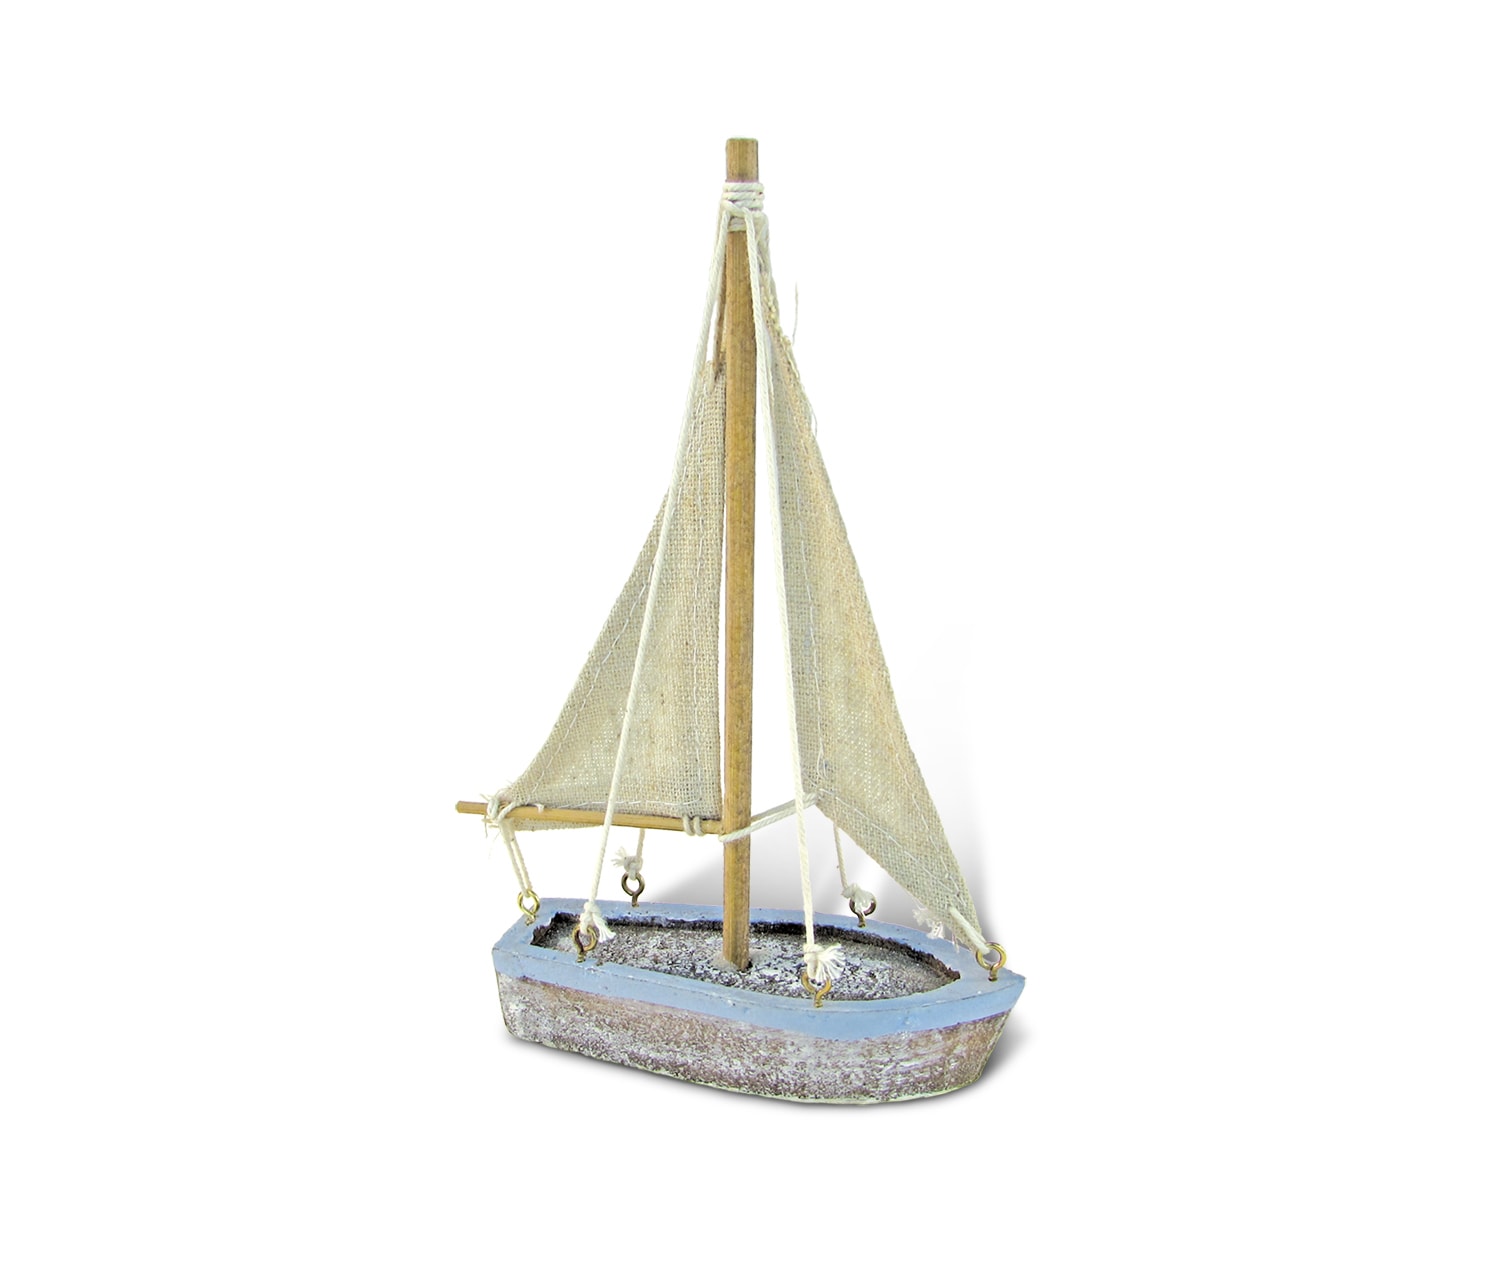 Pacific Small Sailboat – Nautical Decor